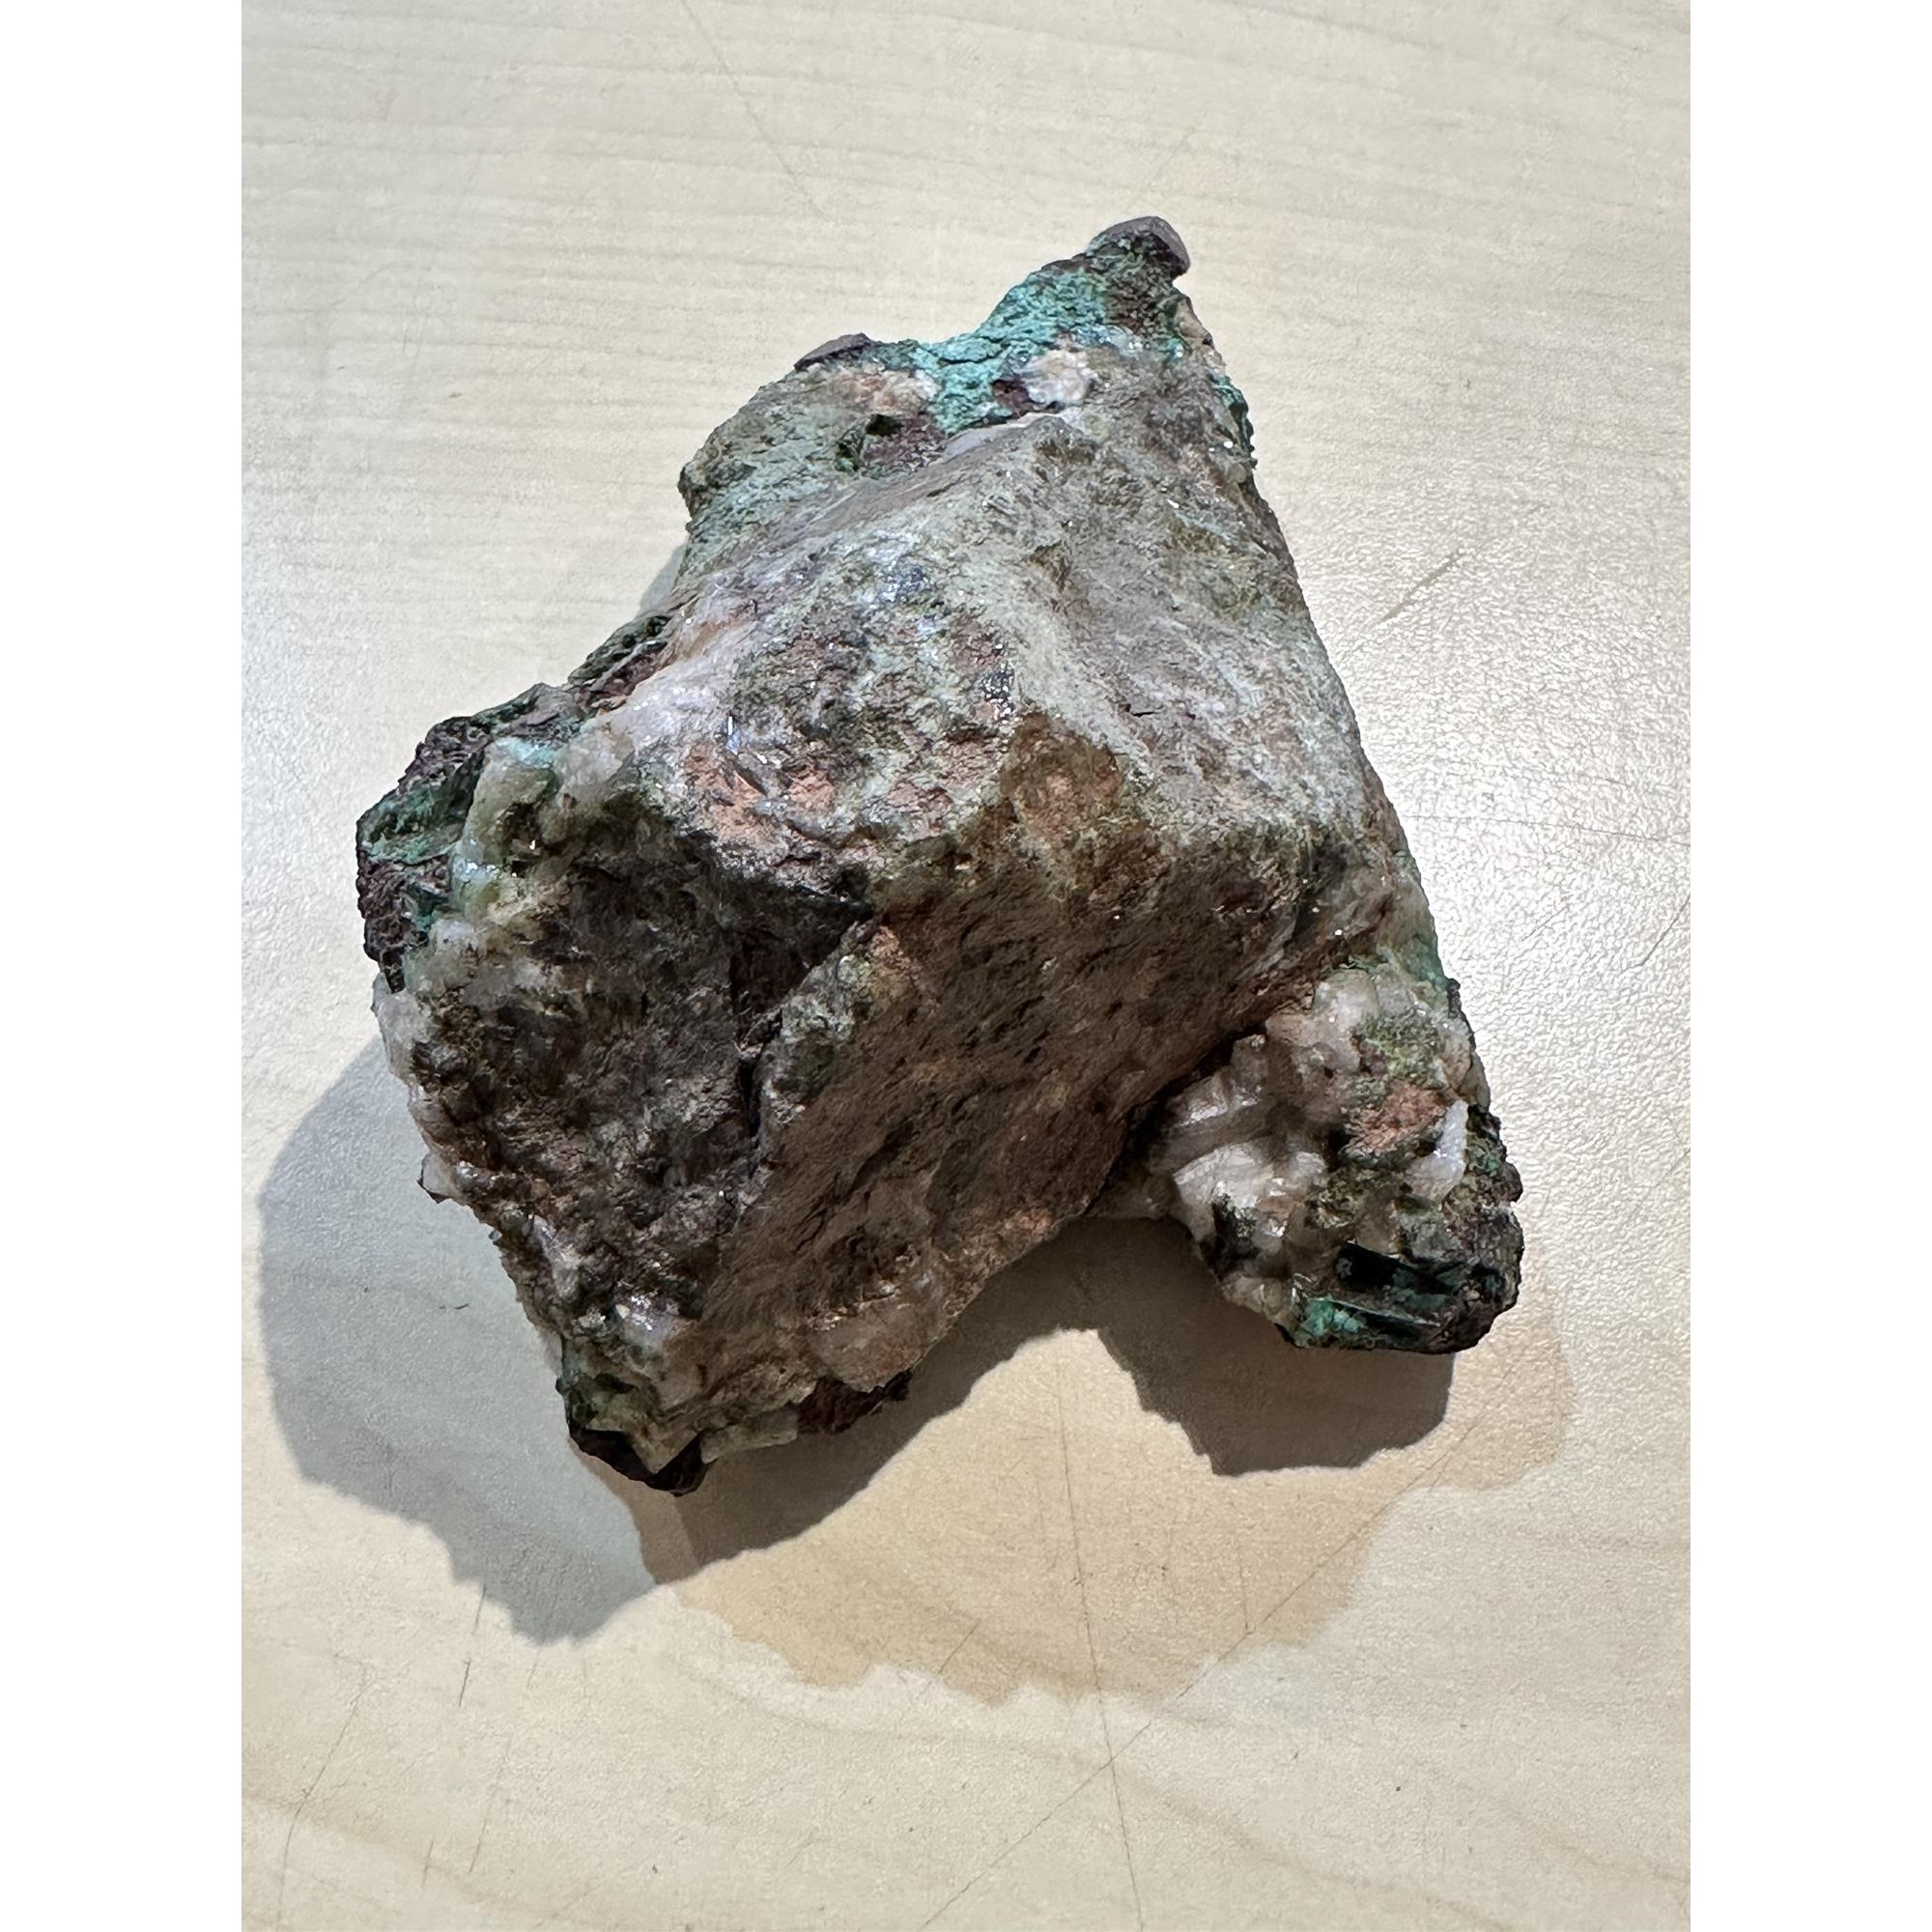 Copper, Glacial Float, Michigan,  2 lb 11oz Prehistoric Online